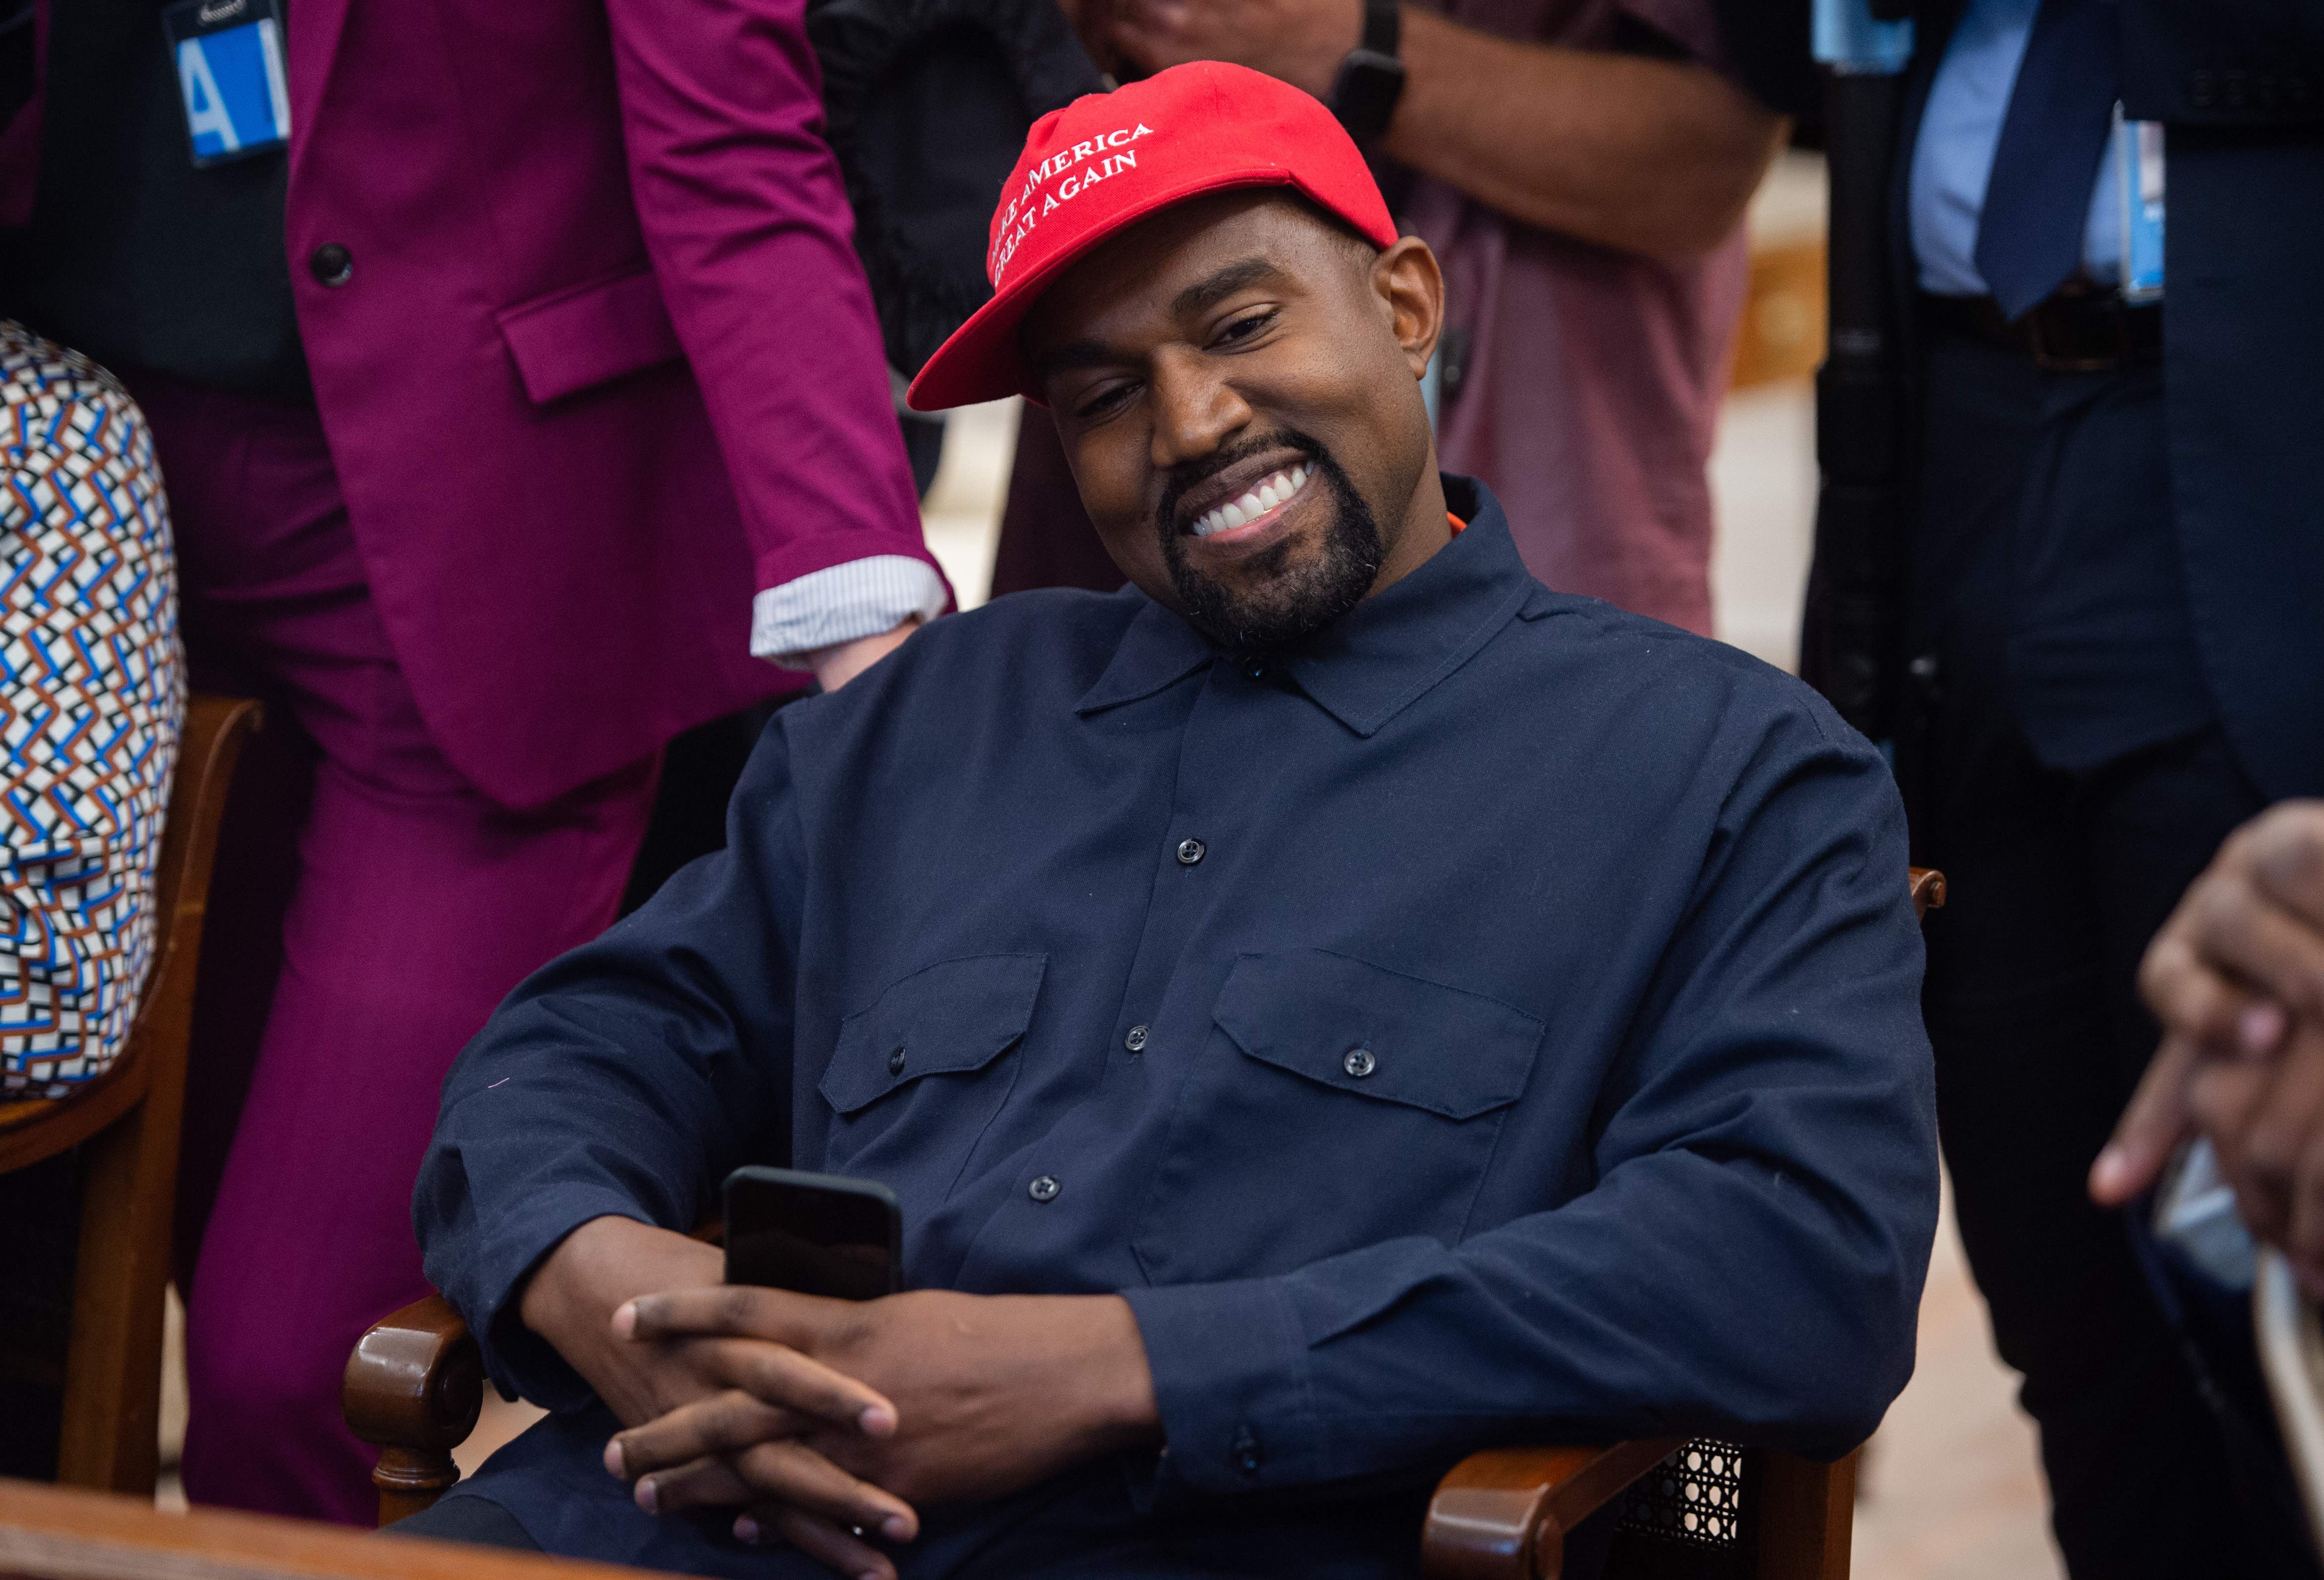 Kanye West celebró su primer mitin de campaña en Carolina del Sur, en medio de su carrera por conseguir la presidencia de Estados Unidos. (Foto Prensa Libre: ARCHIVO/Agence France-Presse)